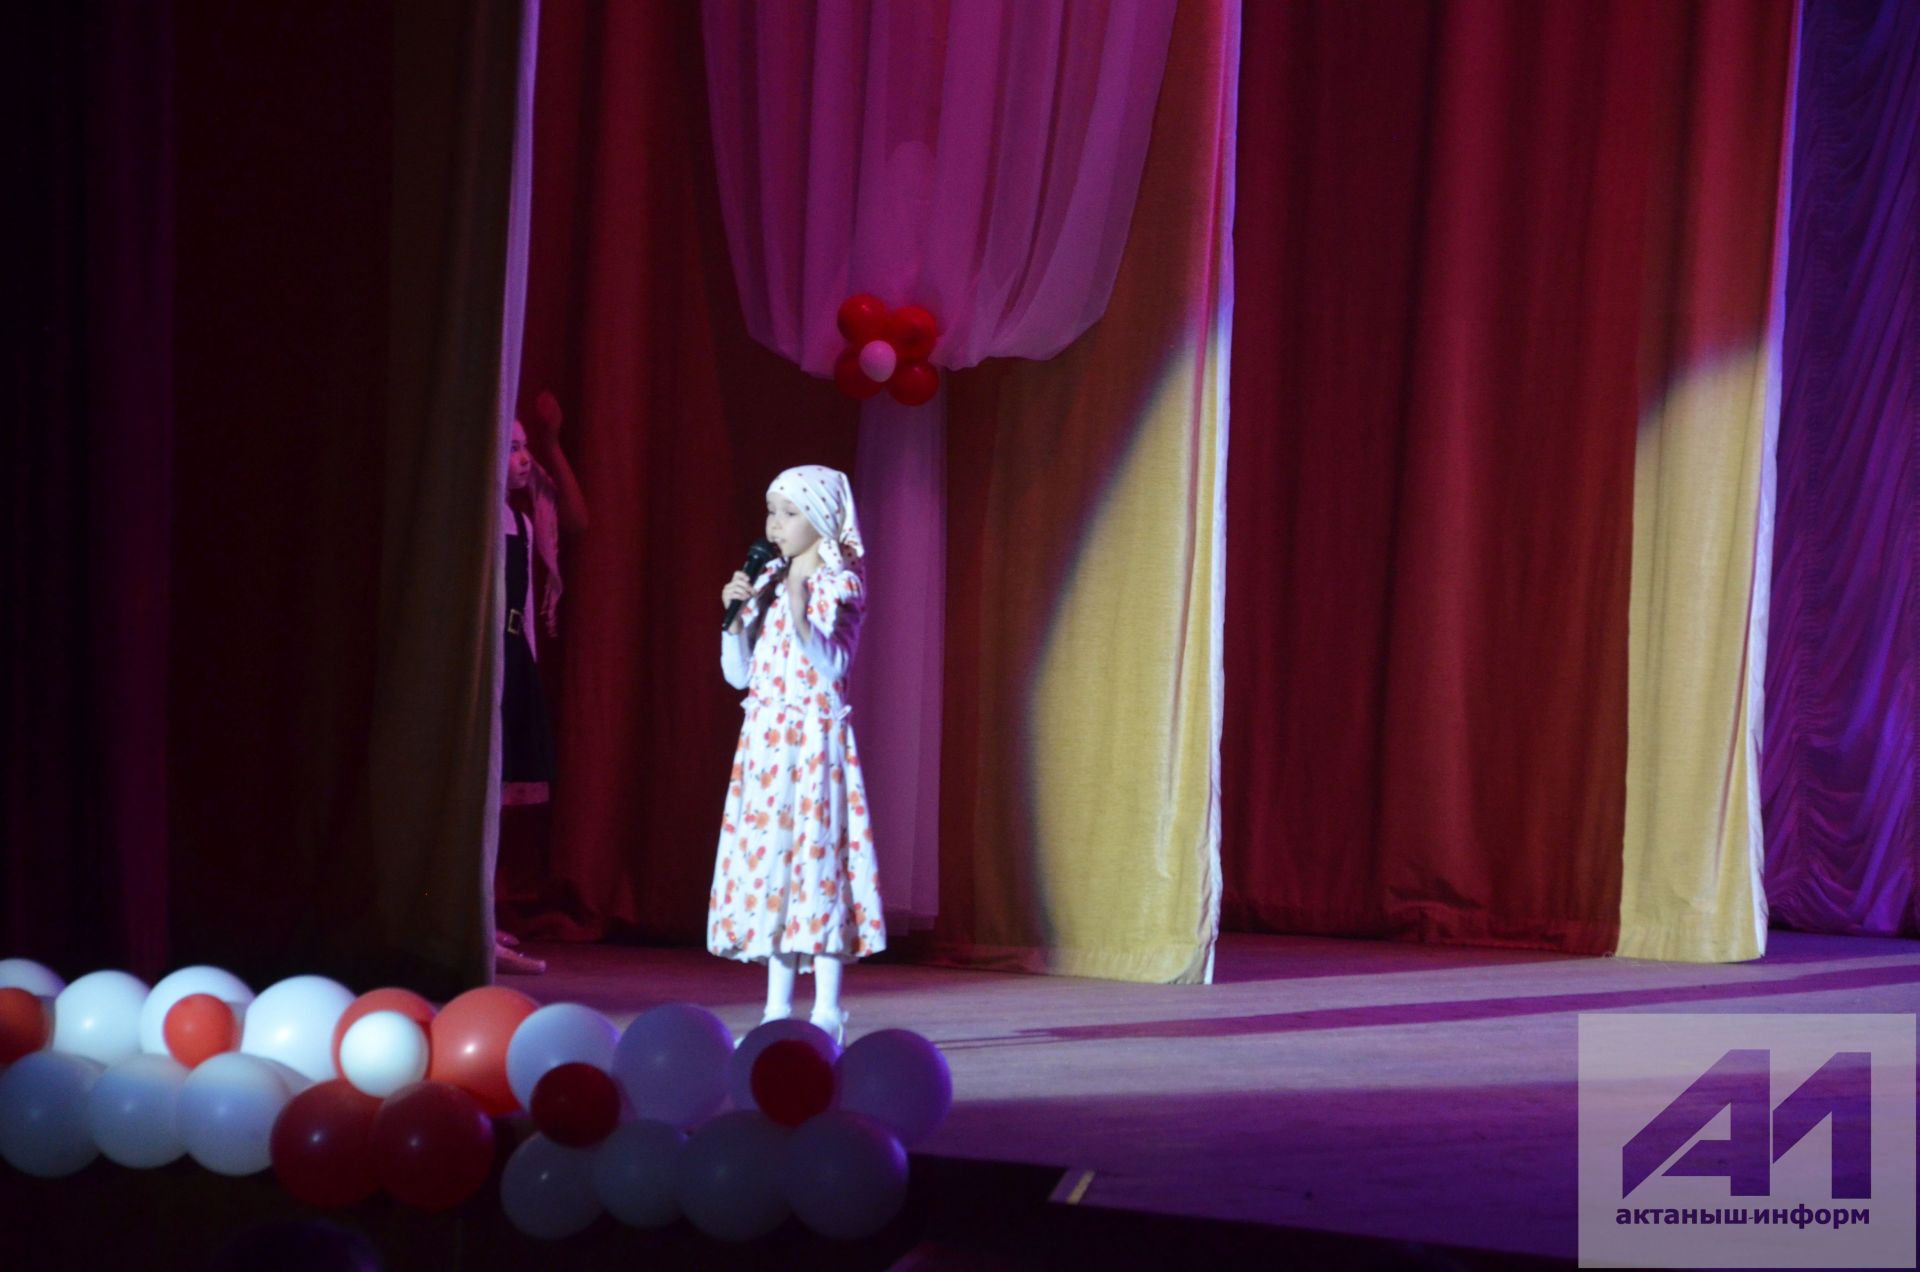 Актанышта инде өченче көн "Созвездие-Йолдызлык" фестивале утә (+Фотомизгелләр)